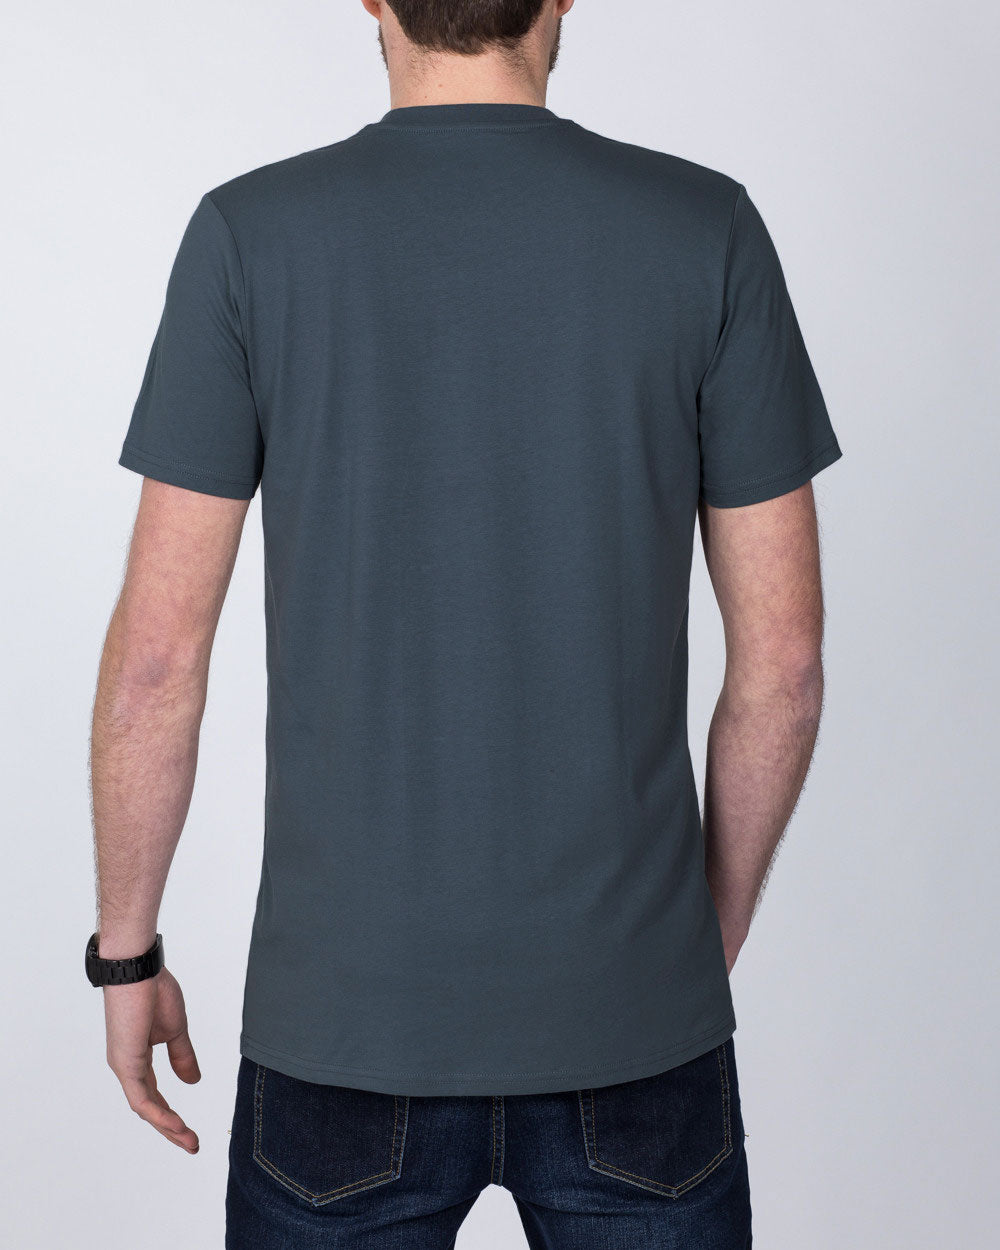 Girav Sydney Extra Tall T-Shirt (dark grey)